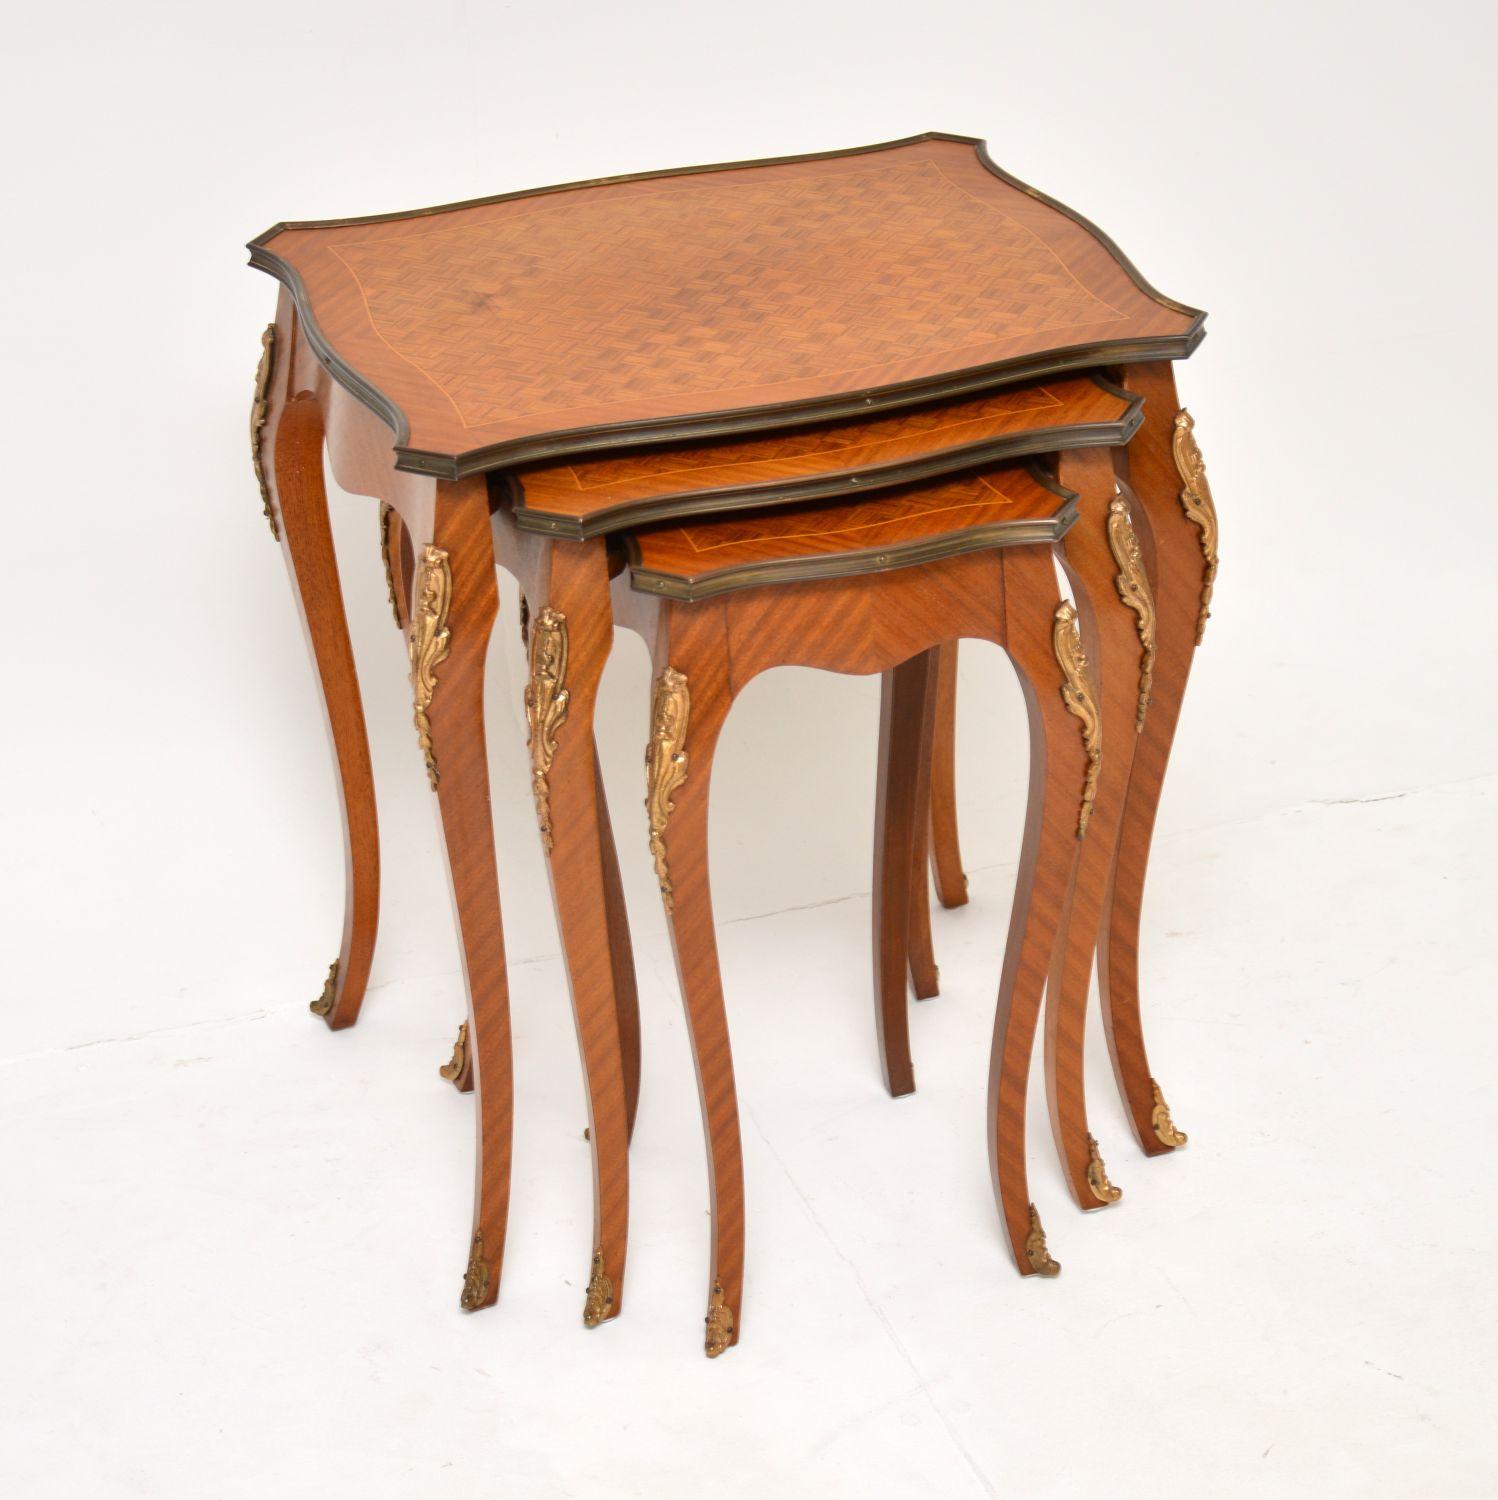 Magnifique et élégant ensemble de tables de style Louis XV, datant des années 1920-30.

La qualité est fabuleuse, ces objets sont très bien faits avec un magnifique design incrusté et des montures en bronze doré.

Nous les avons fait polir récemment